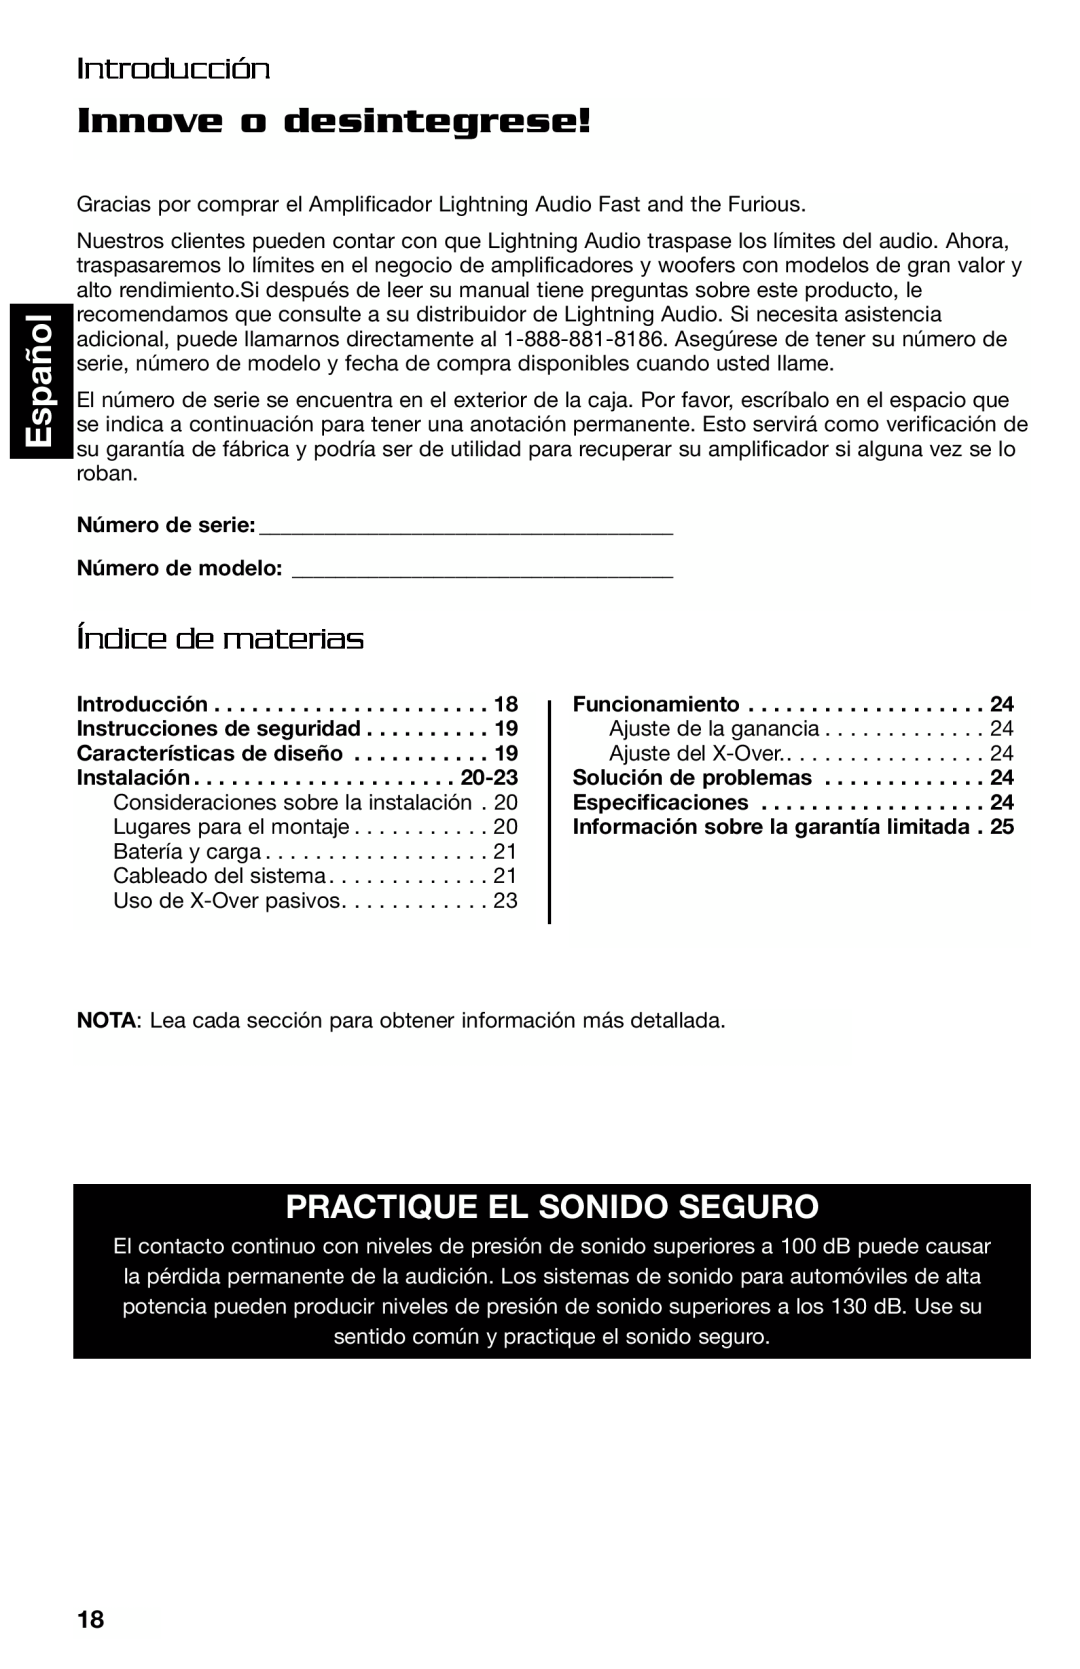 Lightning Audio FF250.1 manual Innove o desintegrese, Español, Introducción, Índice de materias, Practique El Sonido Seguro 